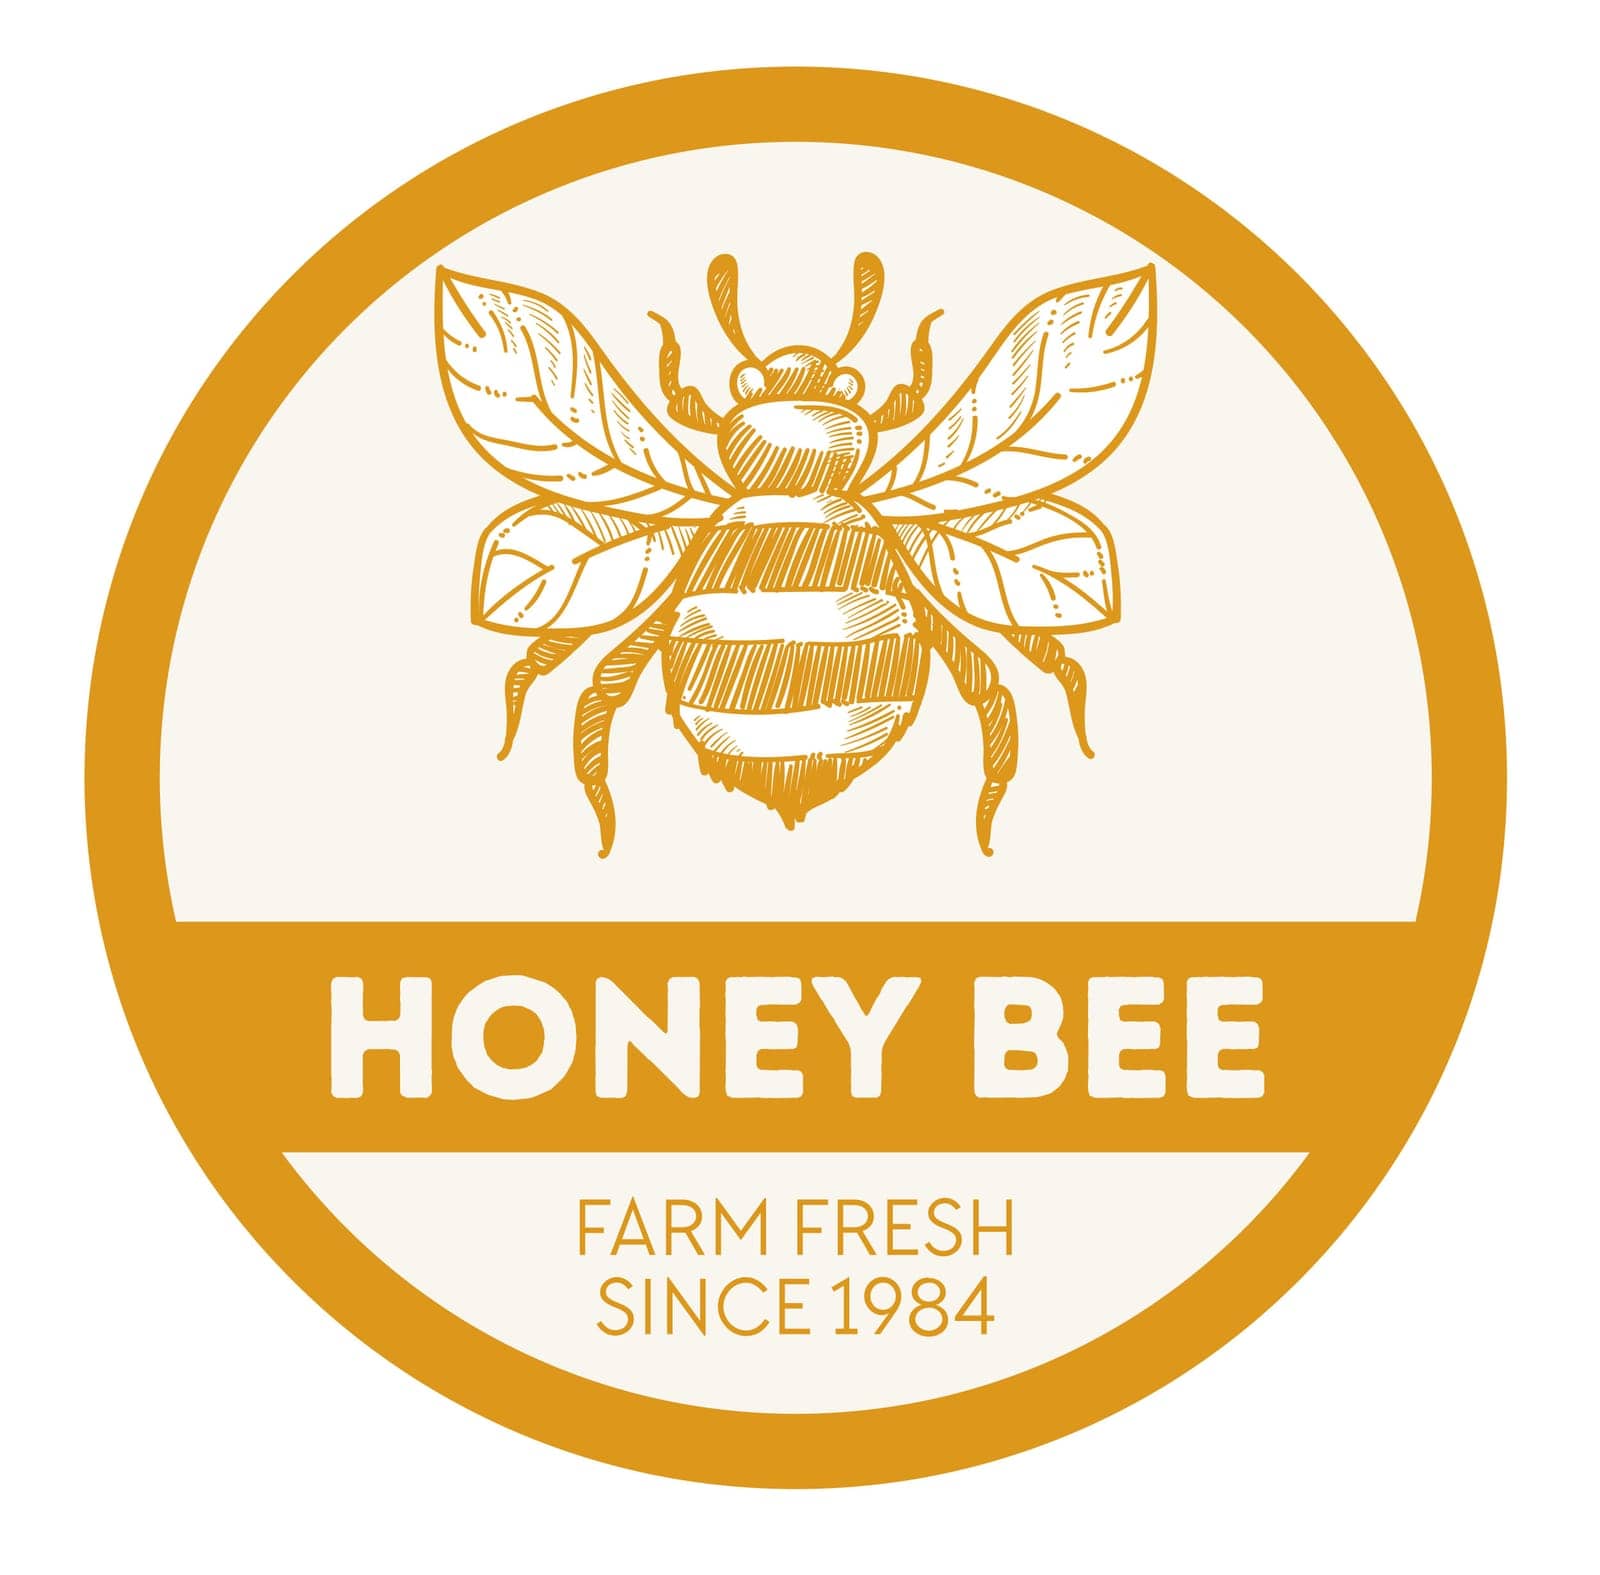 Classic Beehive Honey Seal by Sonulkaster